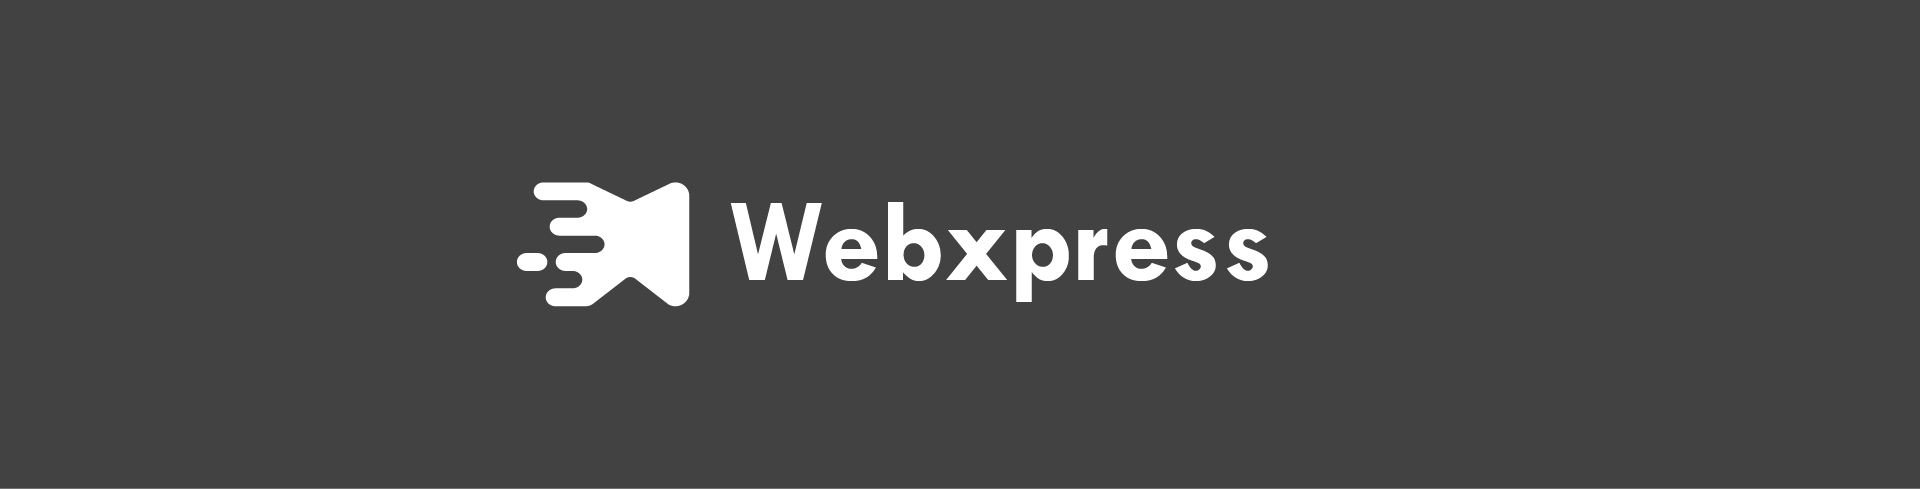 Webxpress logo